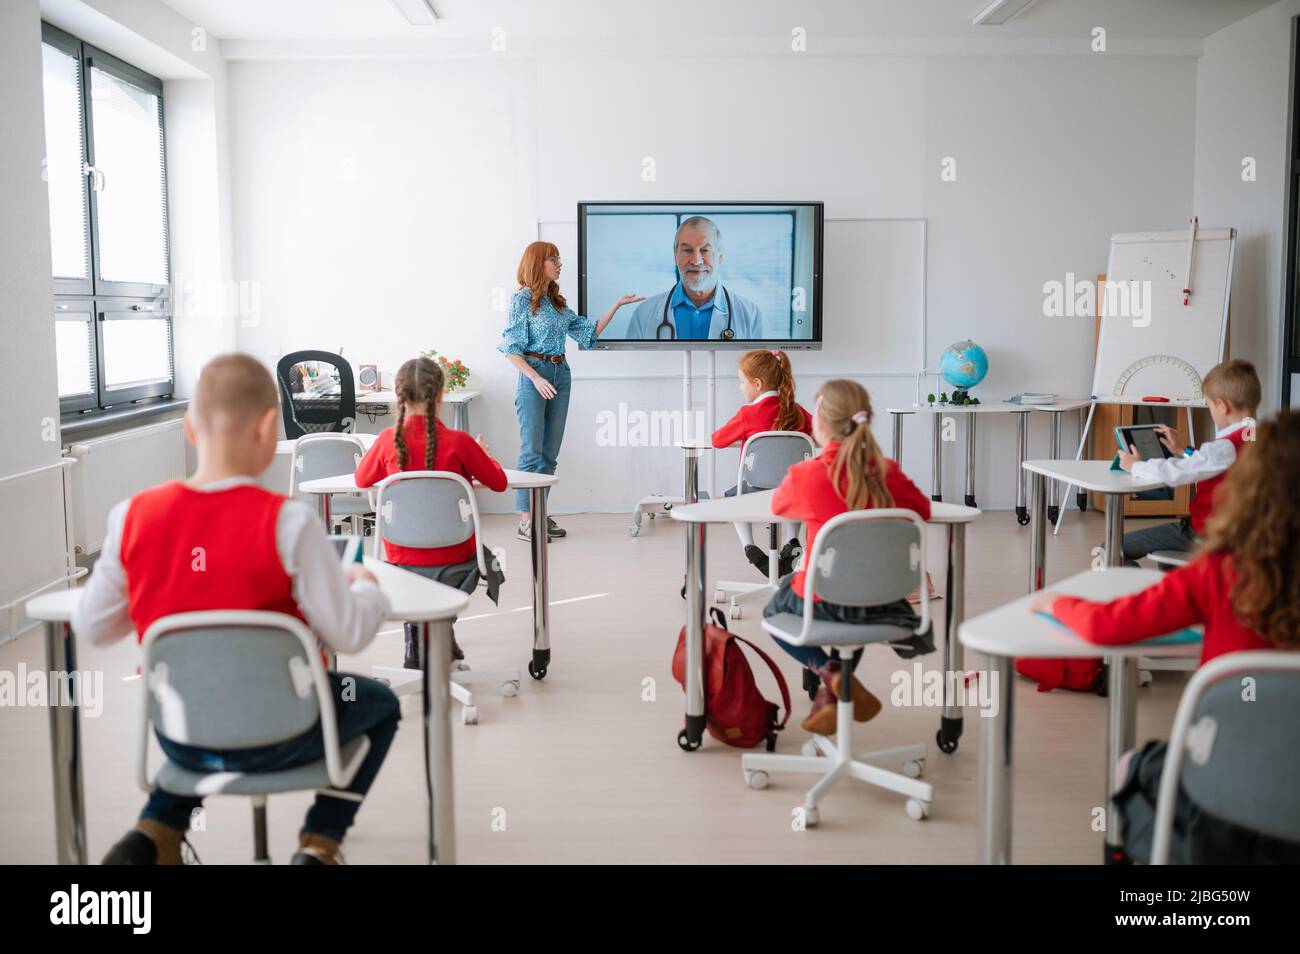 Vue arrière, classe d'élèves assis, à l'écoute de l'enseignant et à la lecture de cours en ligne avec le médecin en classe Banque D'Images